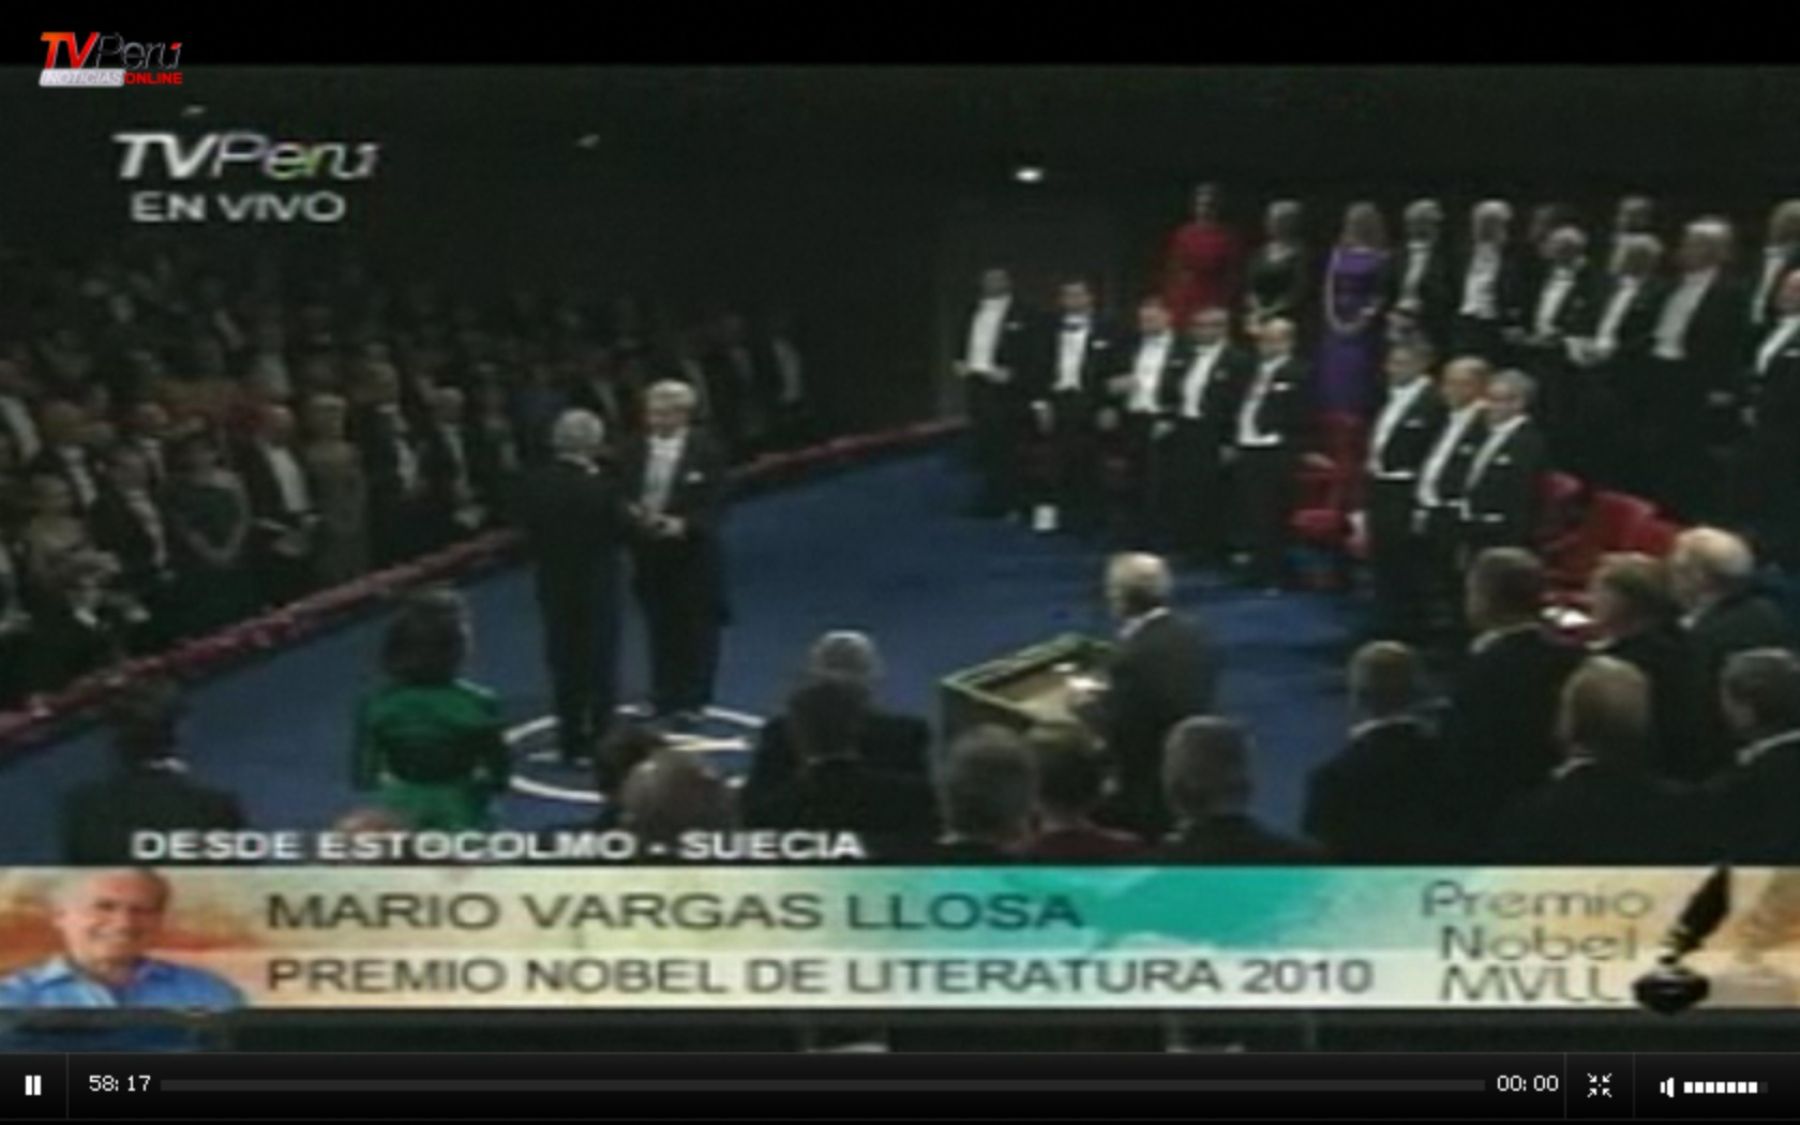 Mario Vargas Llosa recibe premio Nobel de Literatura 2010. Foto: Internet/Medios.